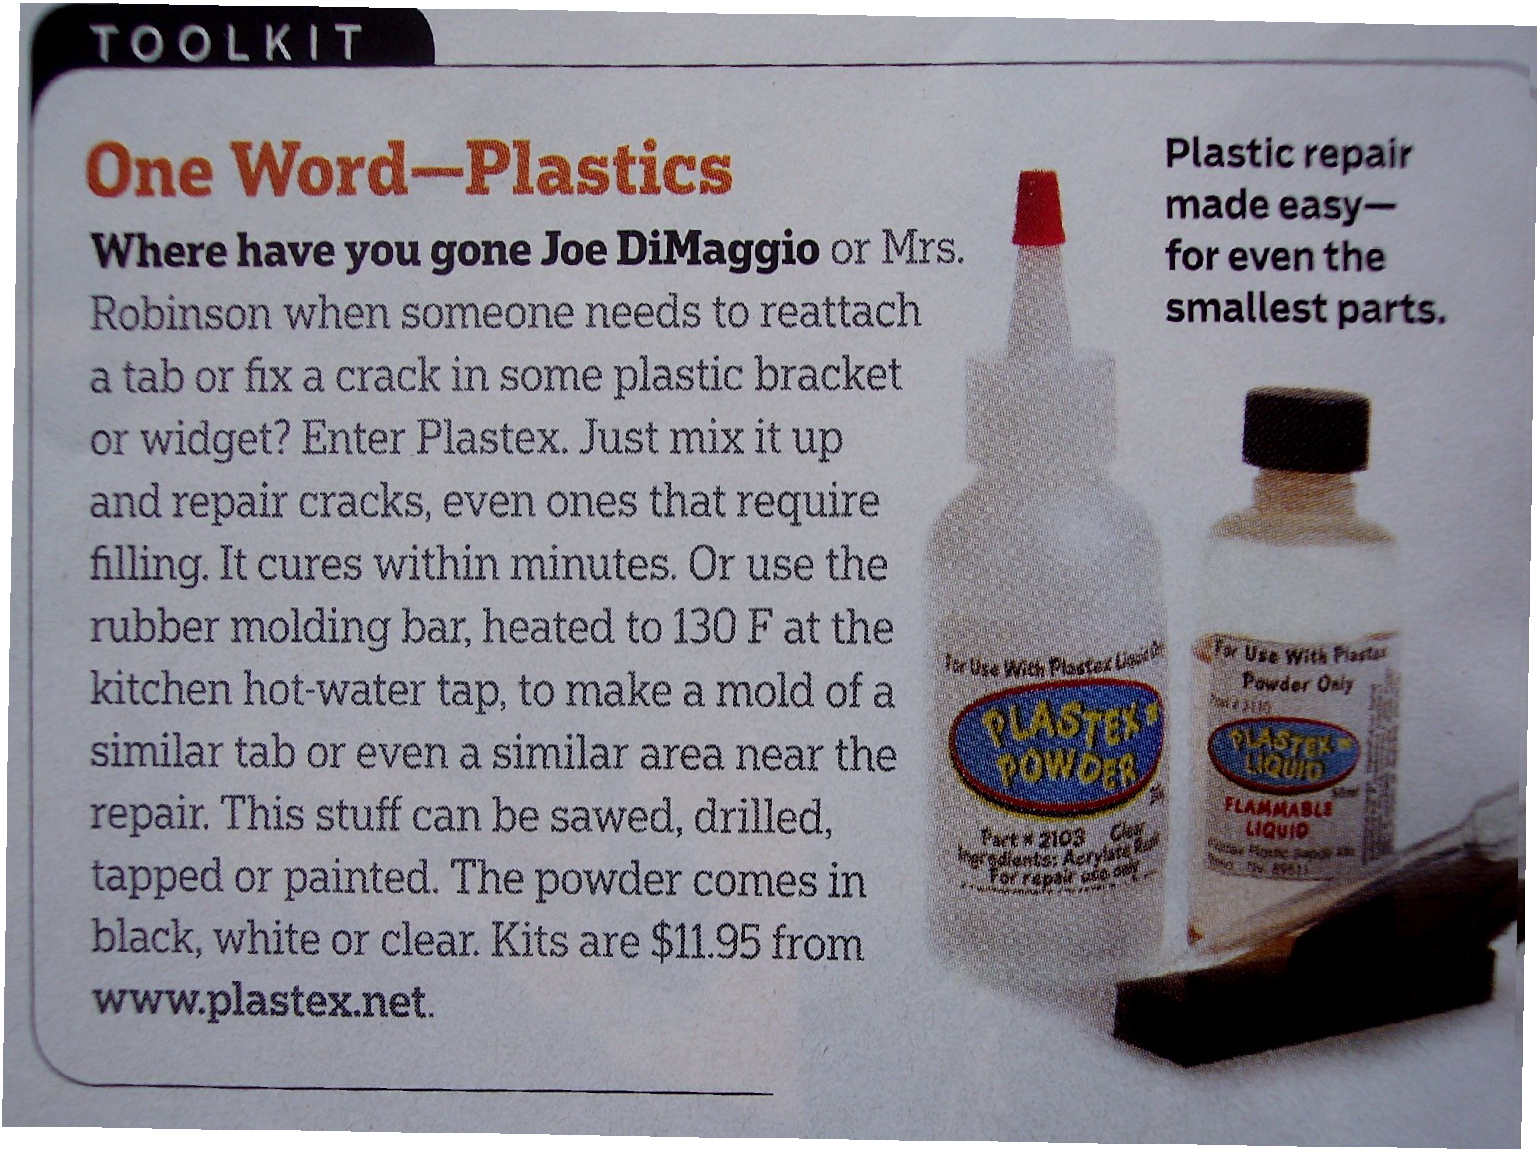 Popular Mechanics, repair crack in plastic